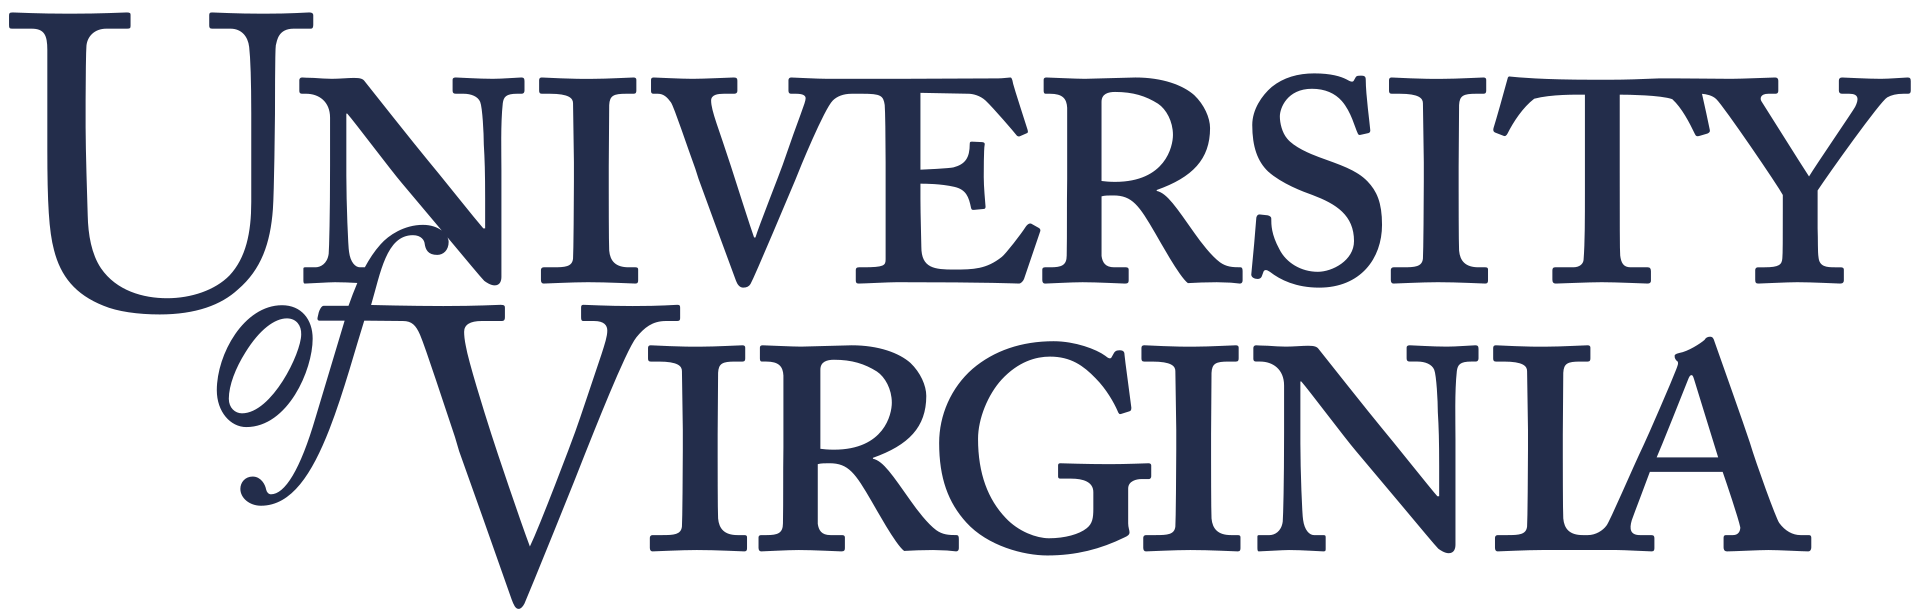 弗吉尼亚大学的标志，由弗吉尼亚大学-可以从美国.Va.，公共领域，http://commons.维基.org/w/index.php?curid = 18657033 "